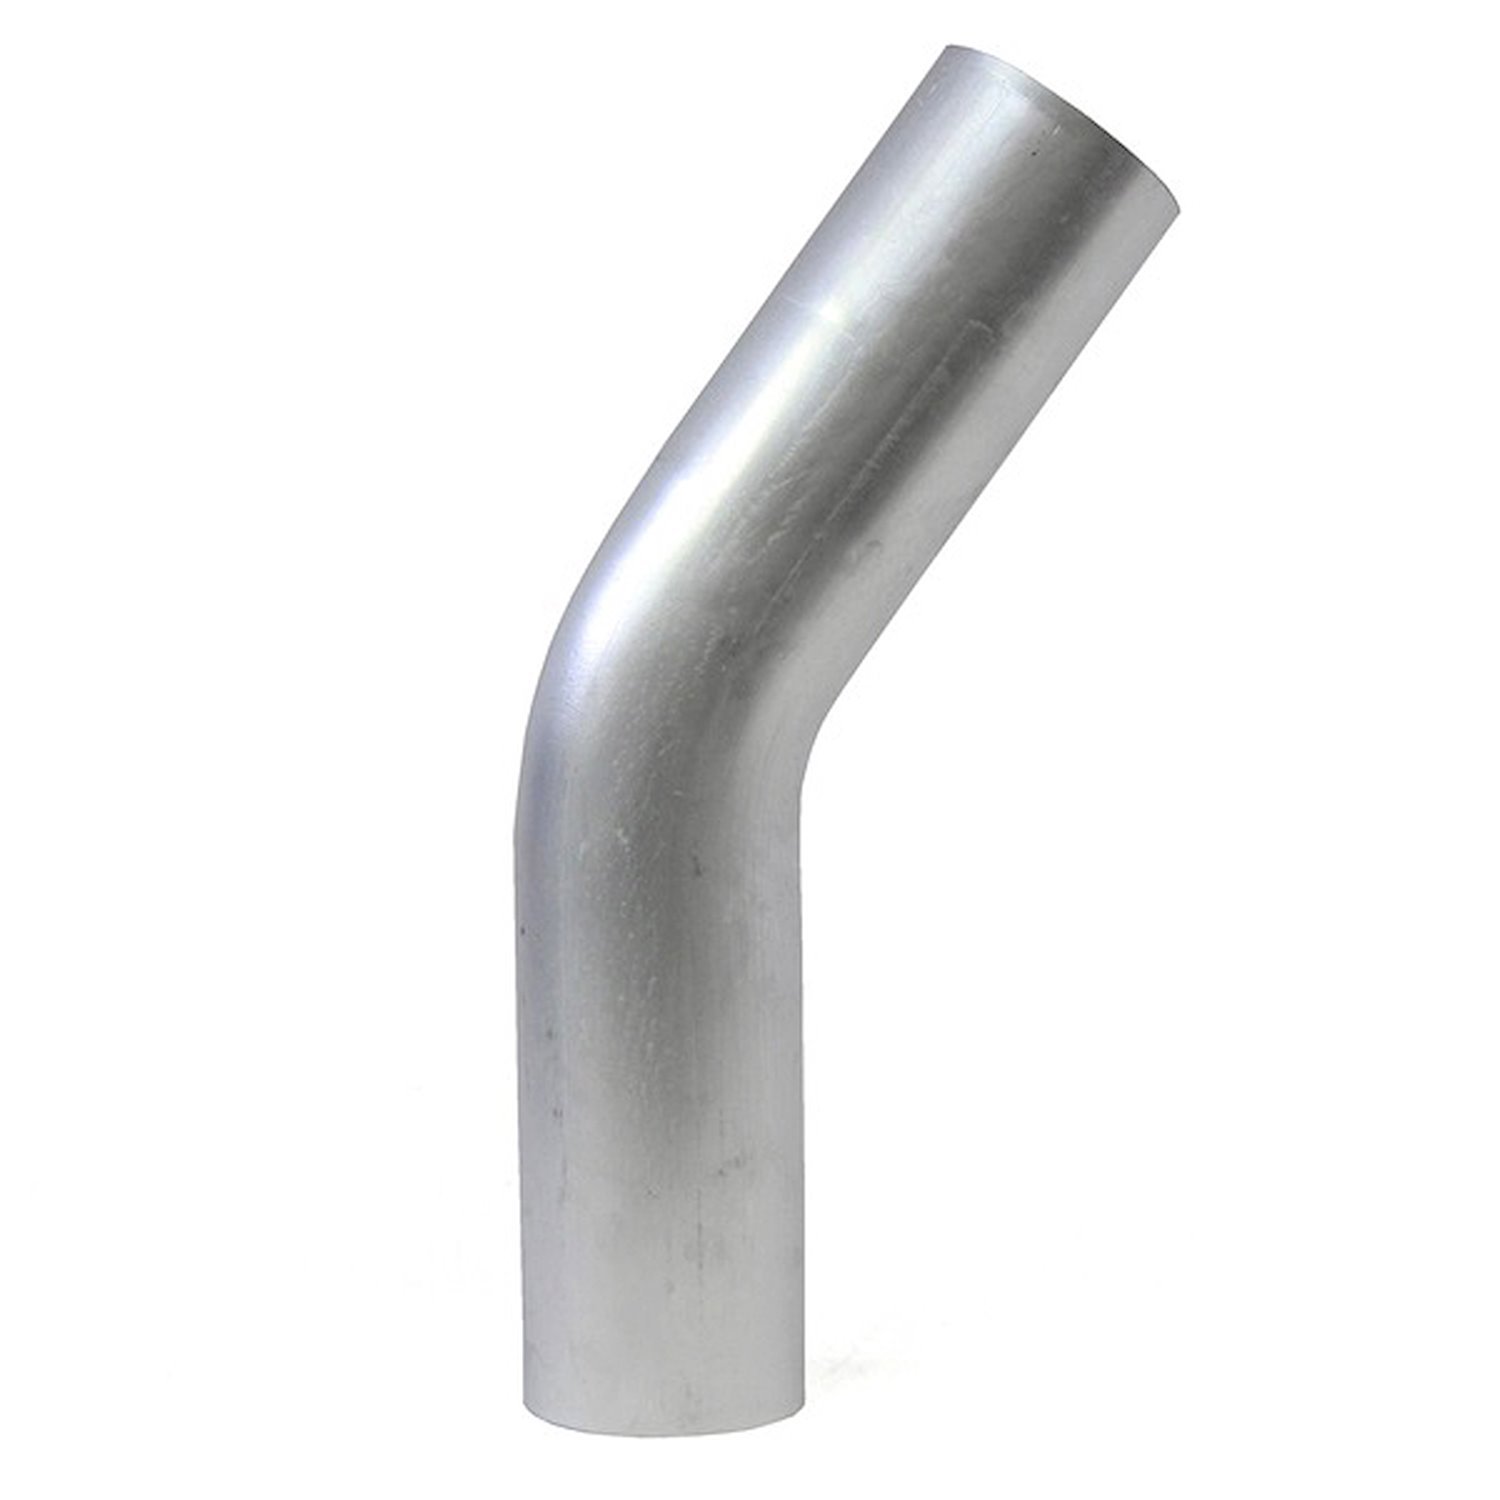 AT35-450-CLR-6 Aluminum Elbow Tube, 6061 Aluminum, 35-Degree Bend Elbow Tubing, 4-1/2 in. OD, Large Radius, 6 in. CLR